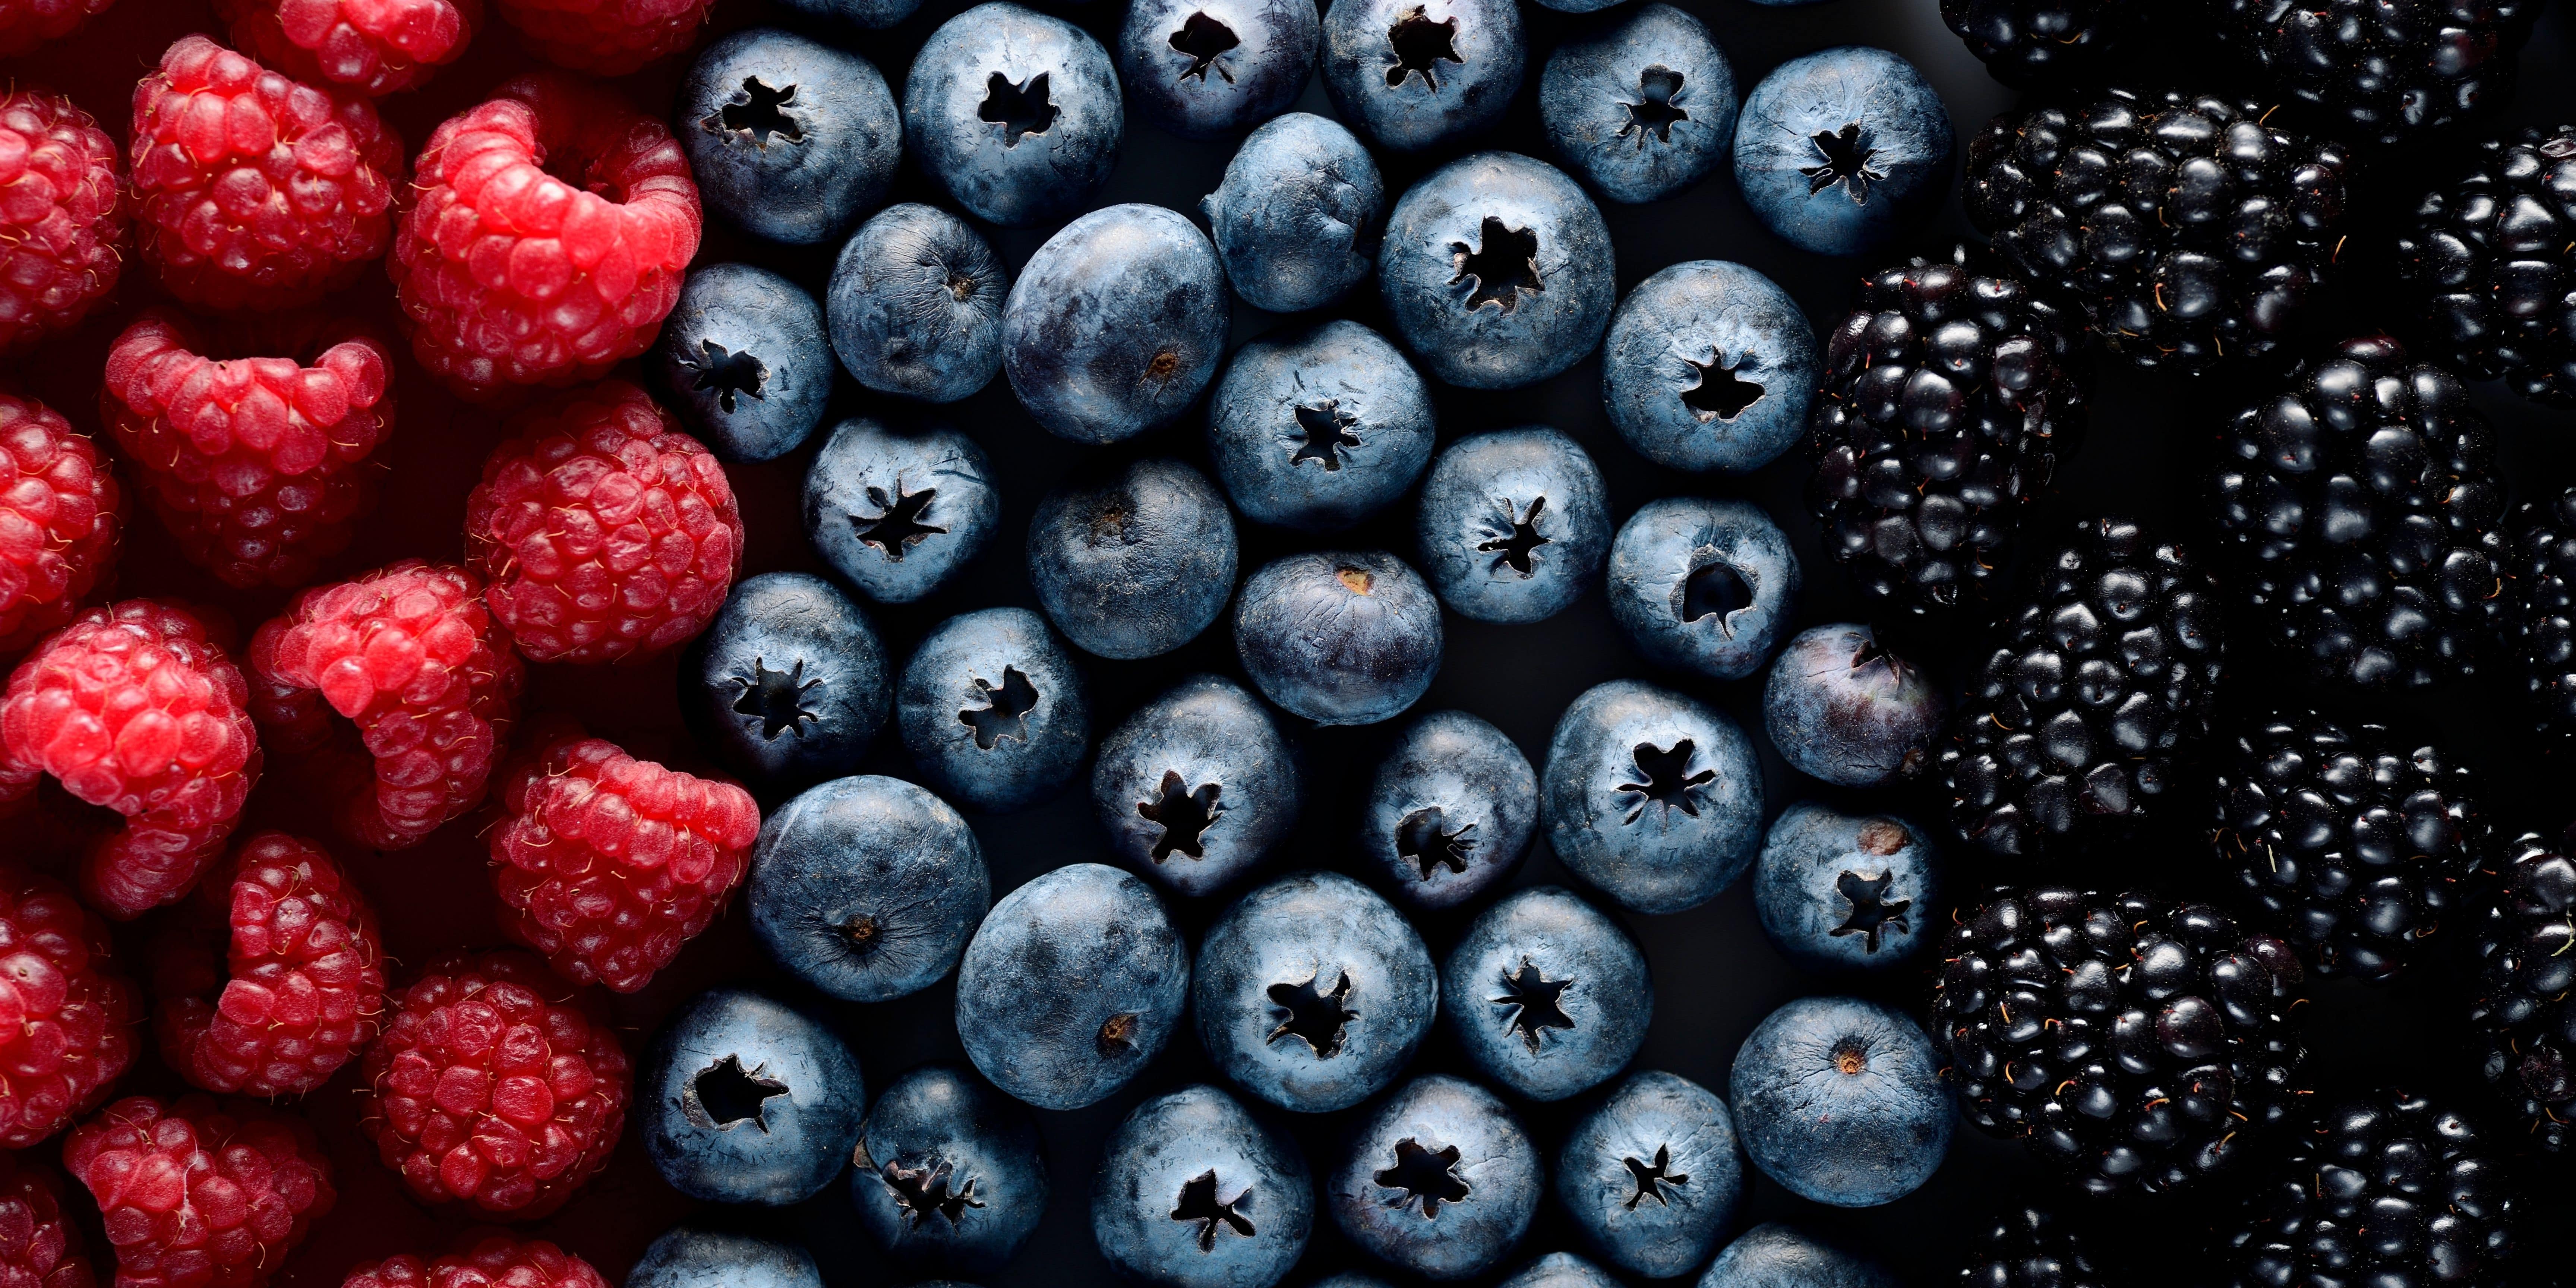 Fresh berries being stored - blueberries, blackberries and raspberries